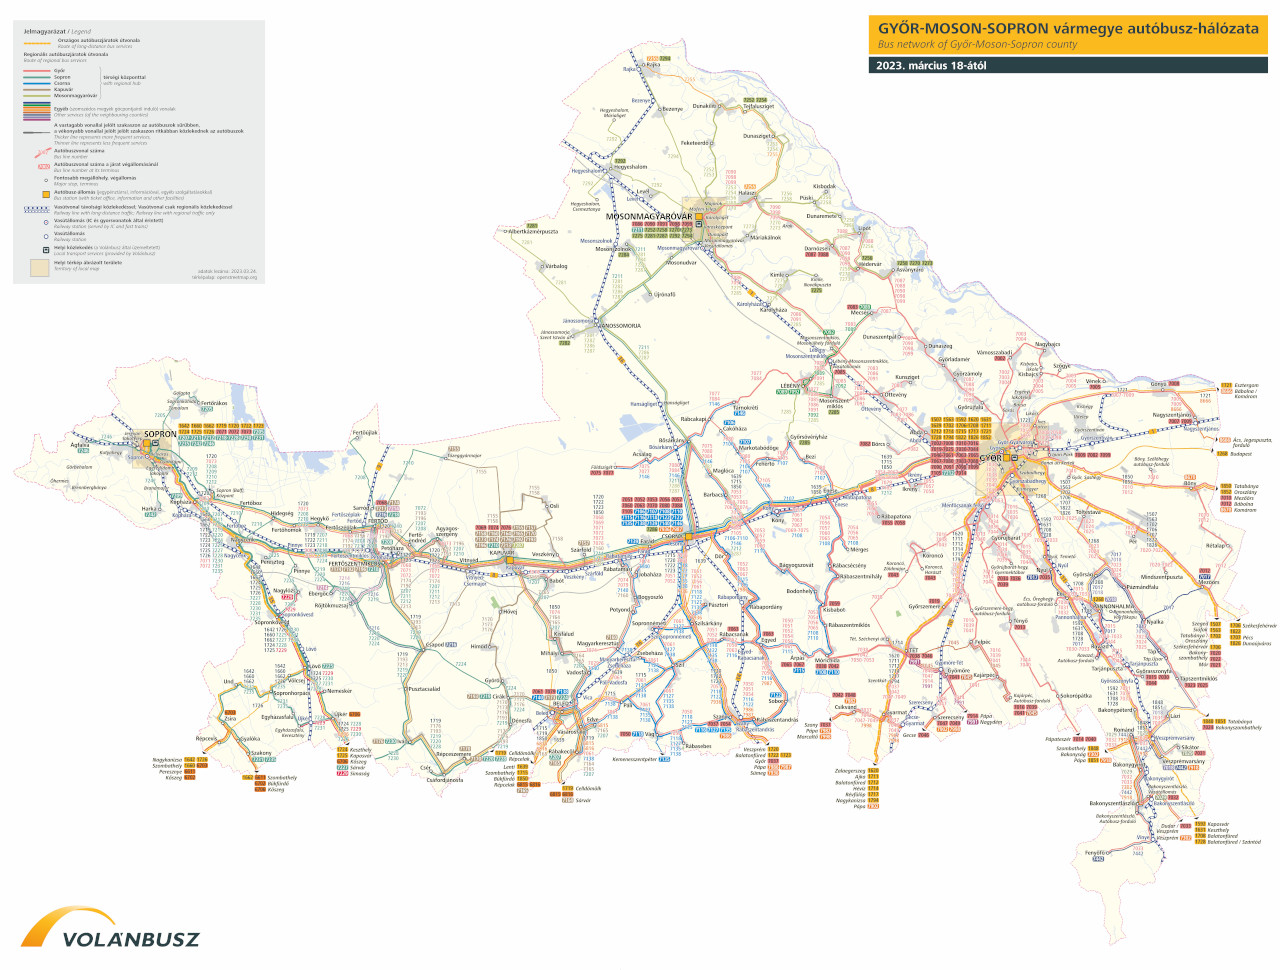 Győr-Moson-Sopron vármegye - Kattintásra új lapon nagy méretű SVG kép nyílik meg - A térkép szöveges leirata nem leképezhető. Kérjük, kérdésével telefonon keressen minket: +36 1 3 49 49 49